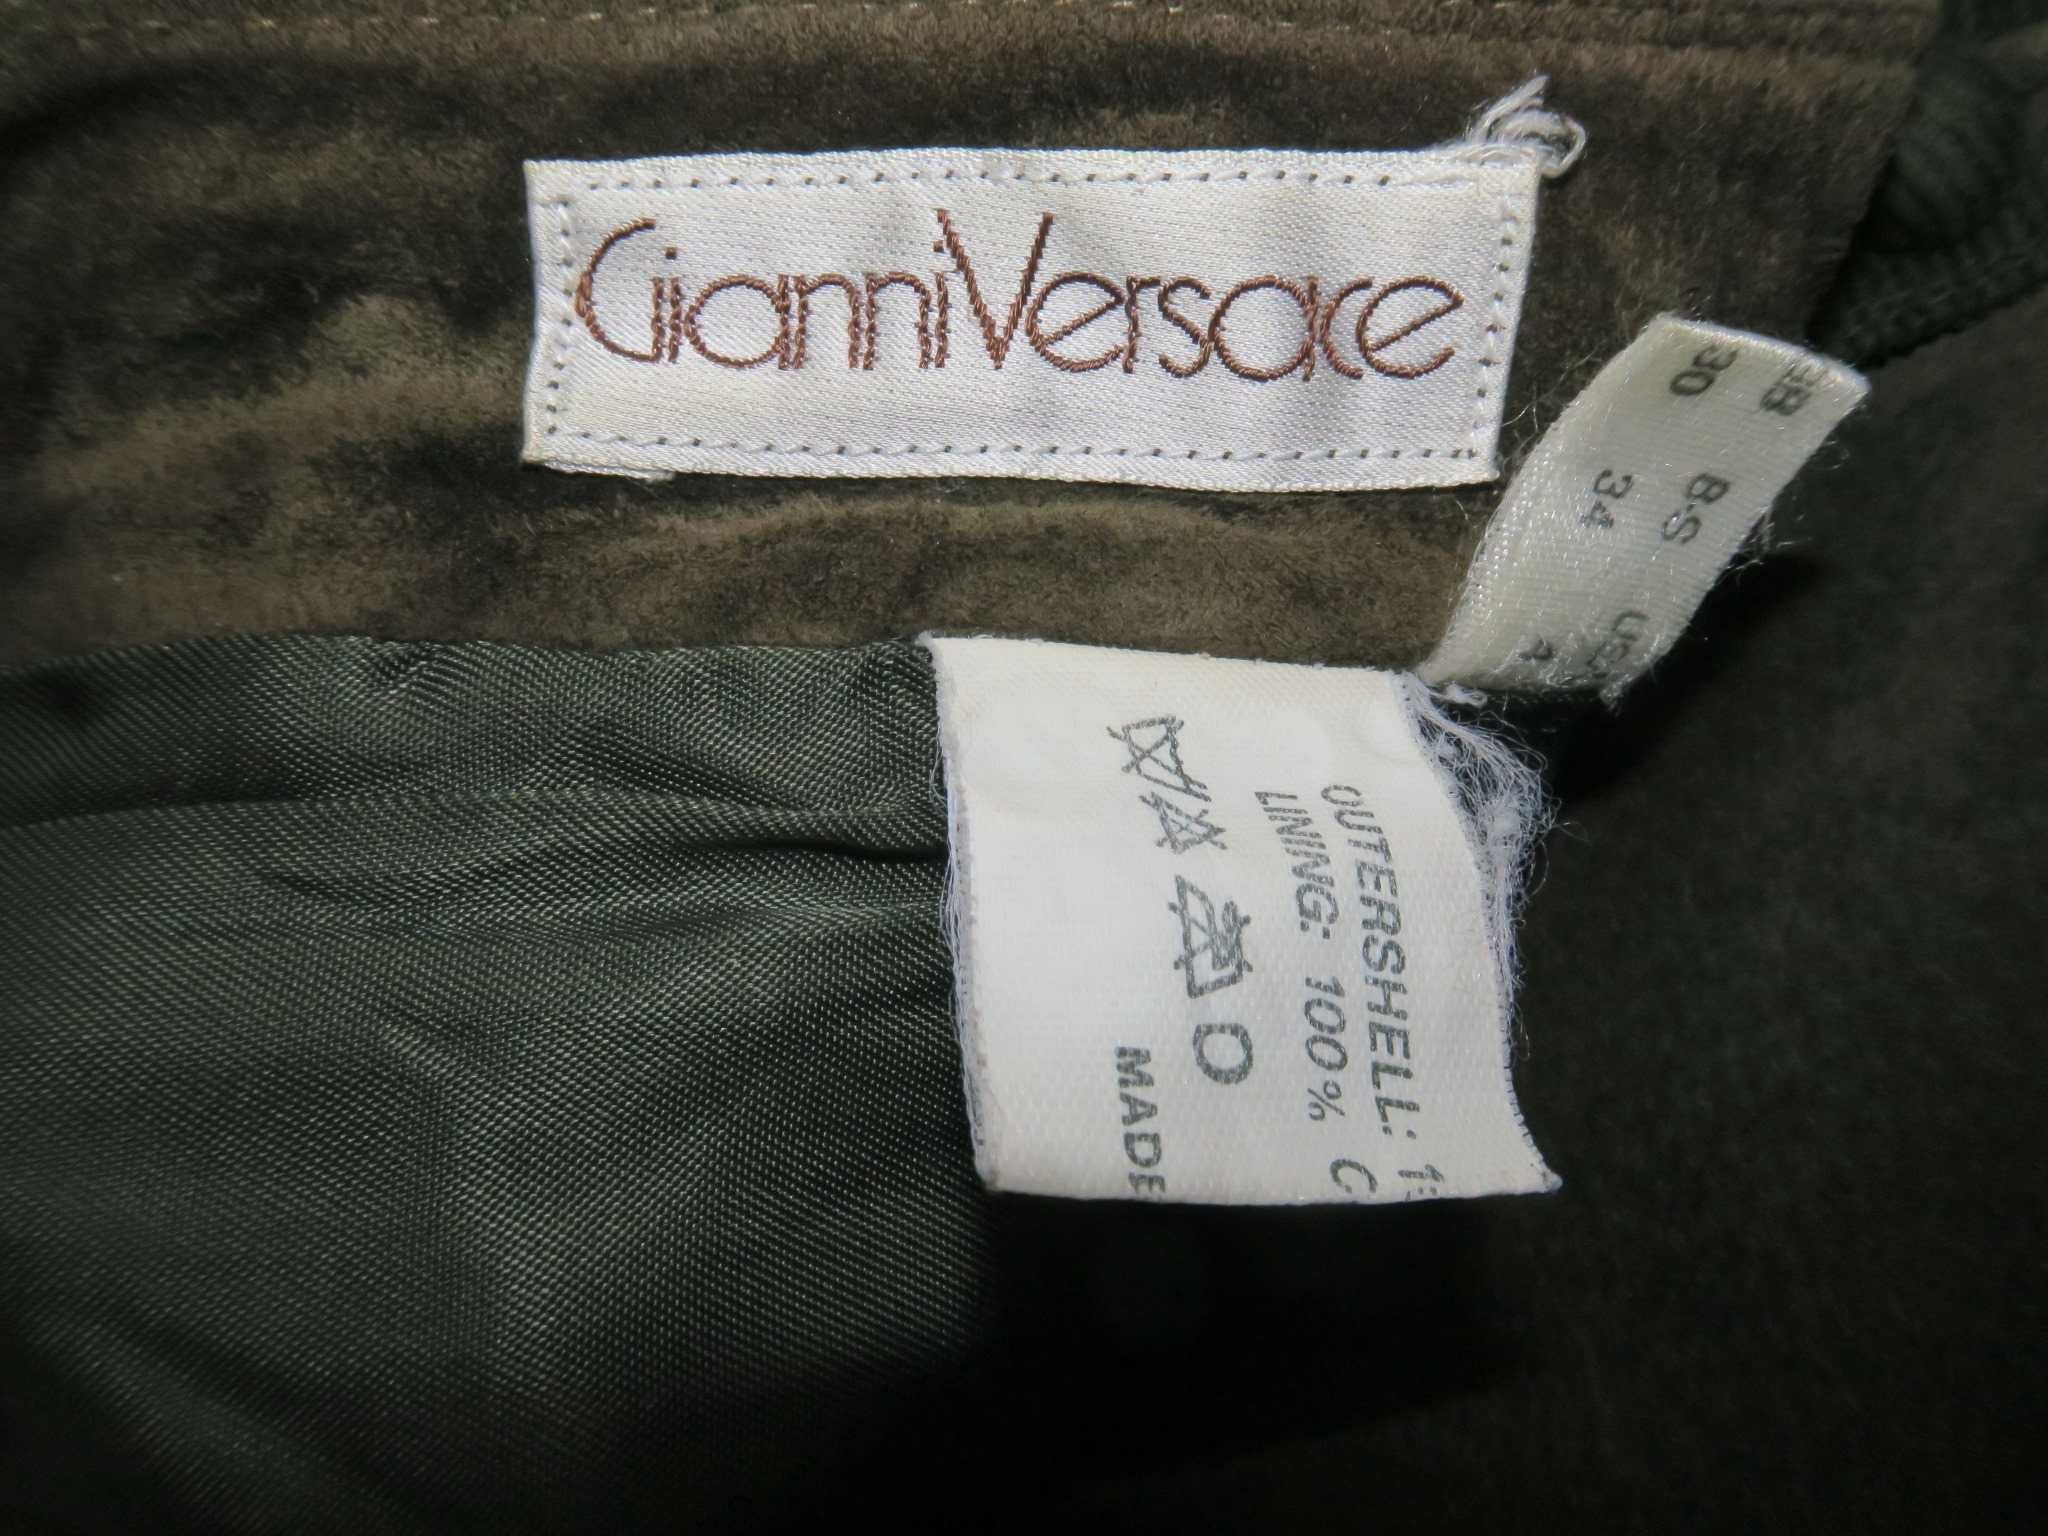 Gianni Versace spodnie vintage zamszowe 34